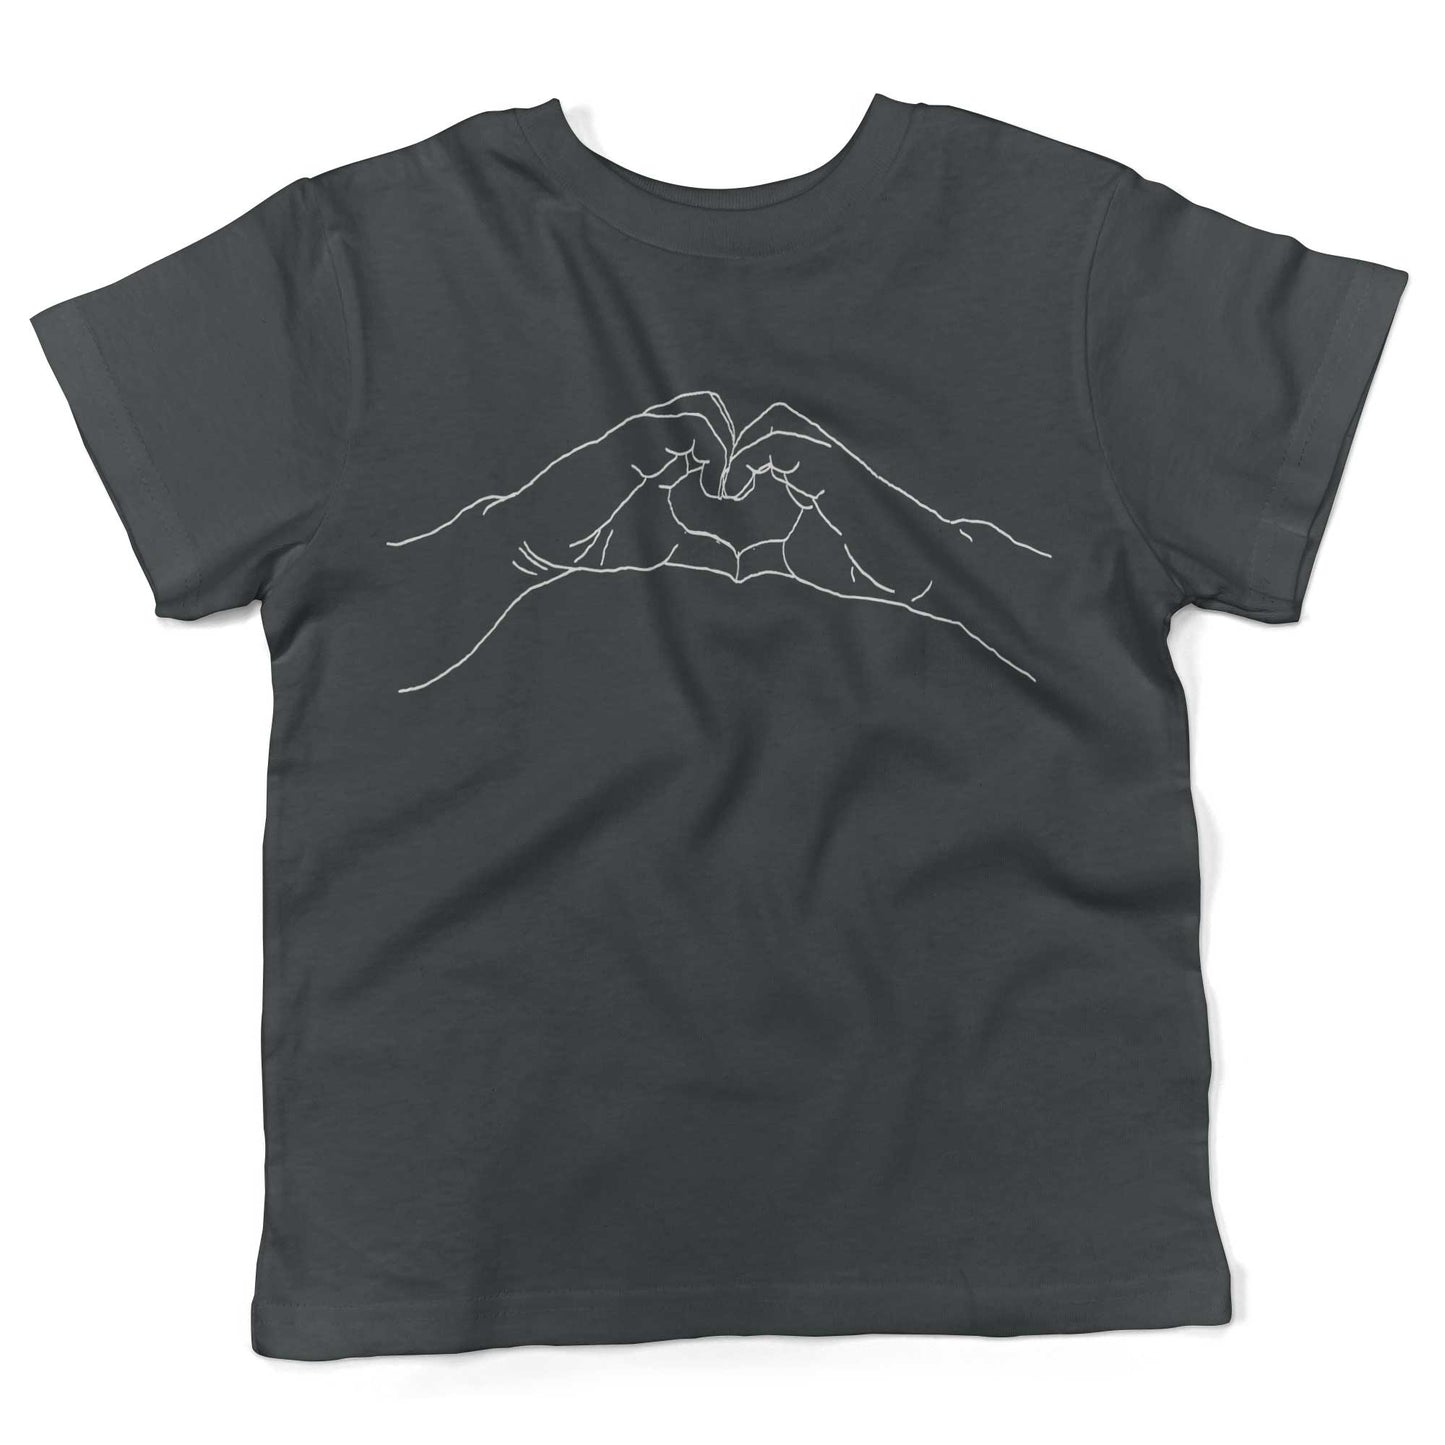 Heart Hands Toddler Shirt-Asphalt-2T